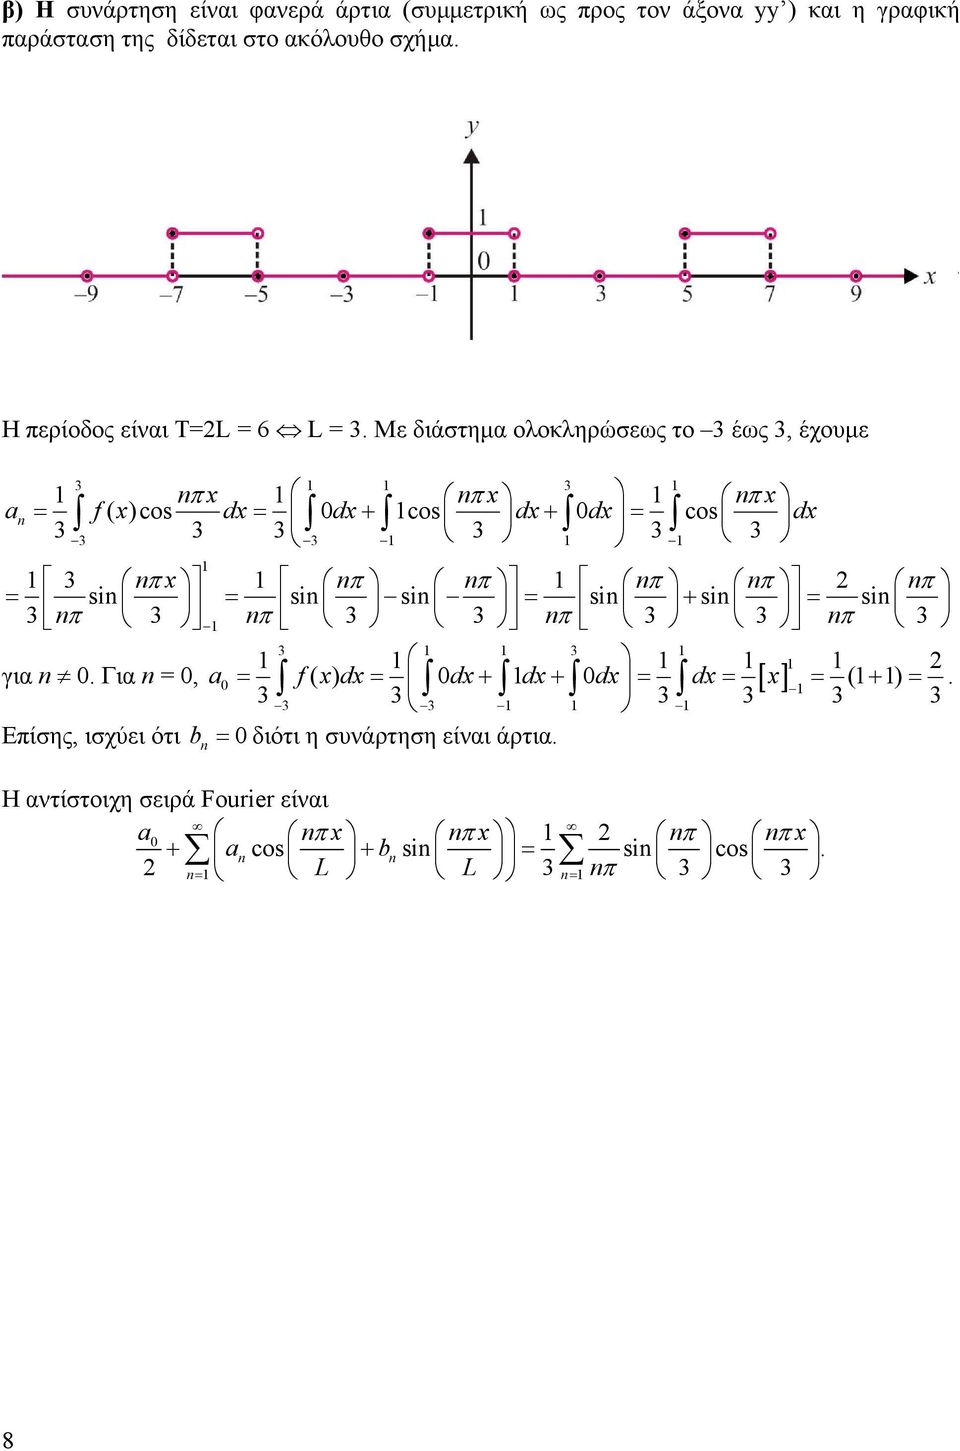 Με διάστημα ολοκληρώσεως το έως, έχουμε πx πx πx a = f( x)cos dx 0dx cos dx 0dx cos dx = + + = π x π π π π π = si si si si si